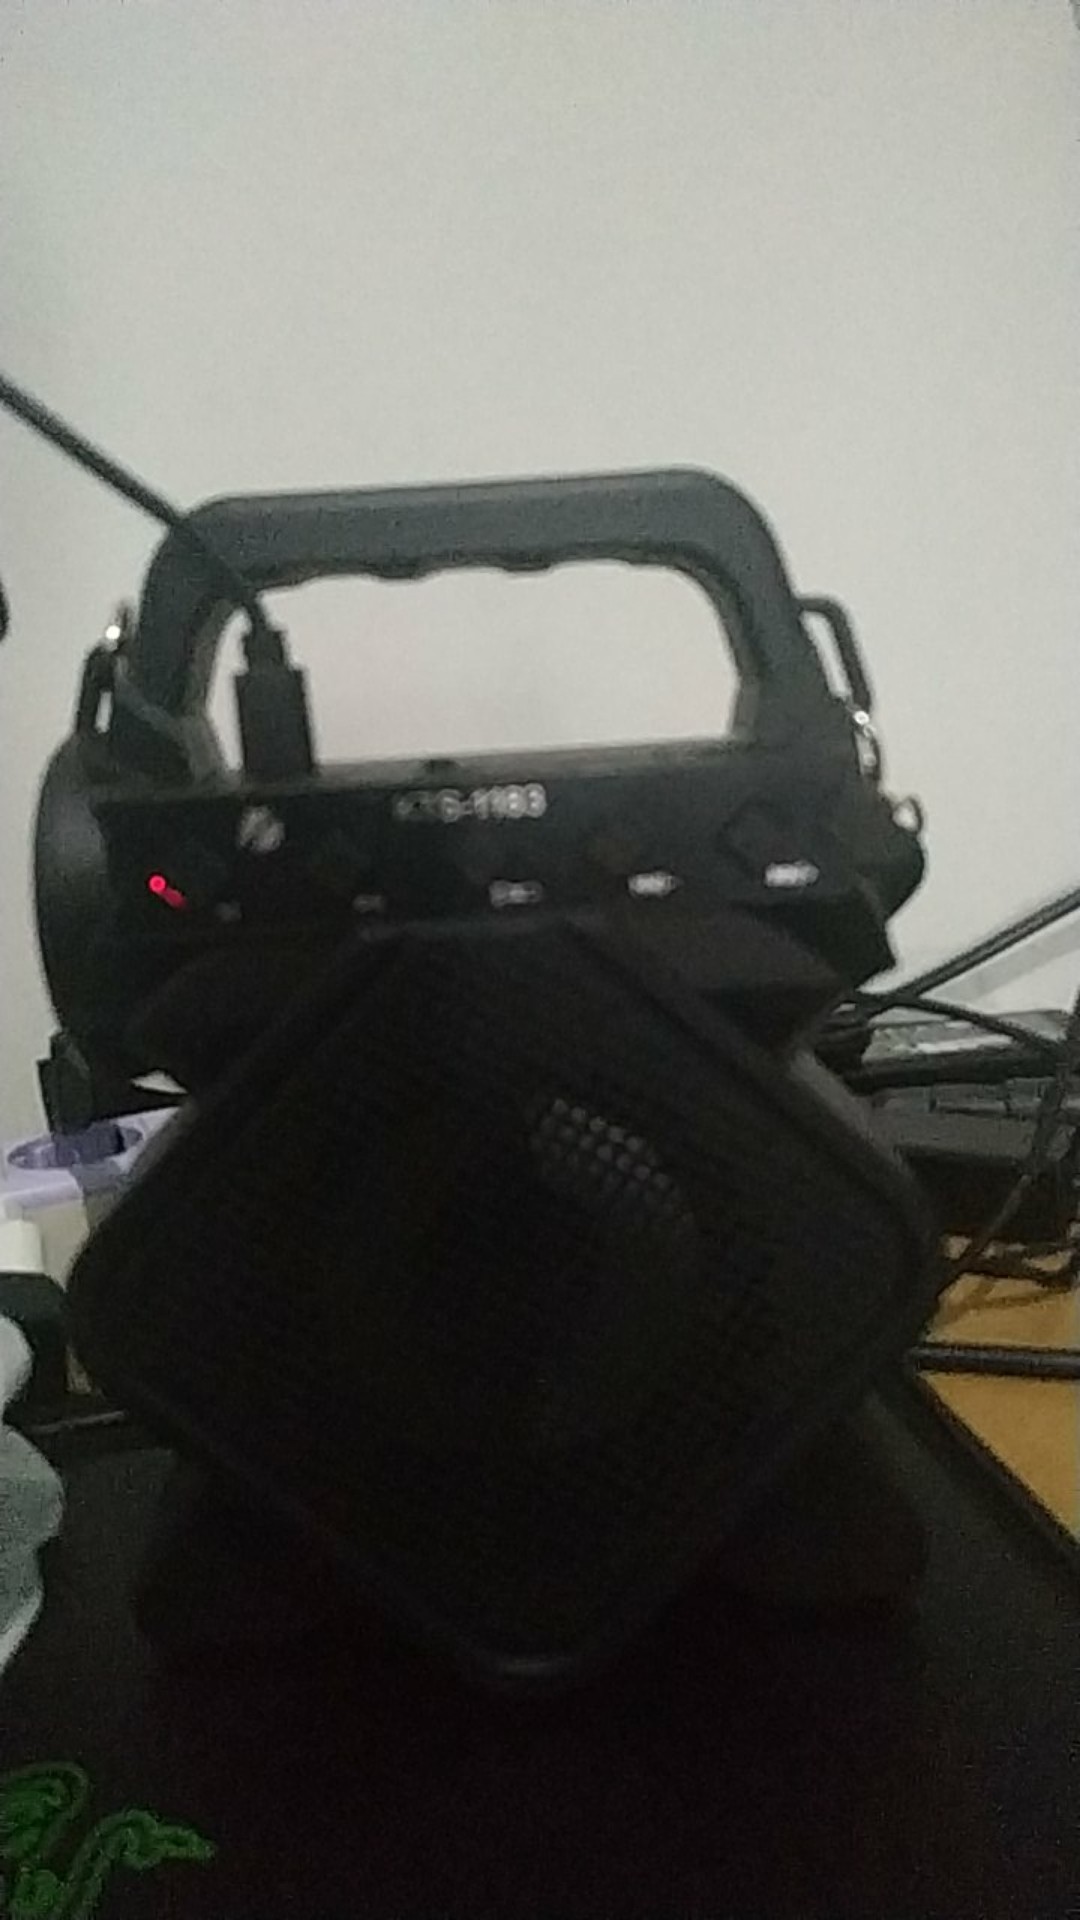 Speaker+mic karaoke+senter kts 1183 (speaker murah speaker